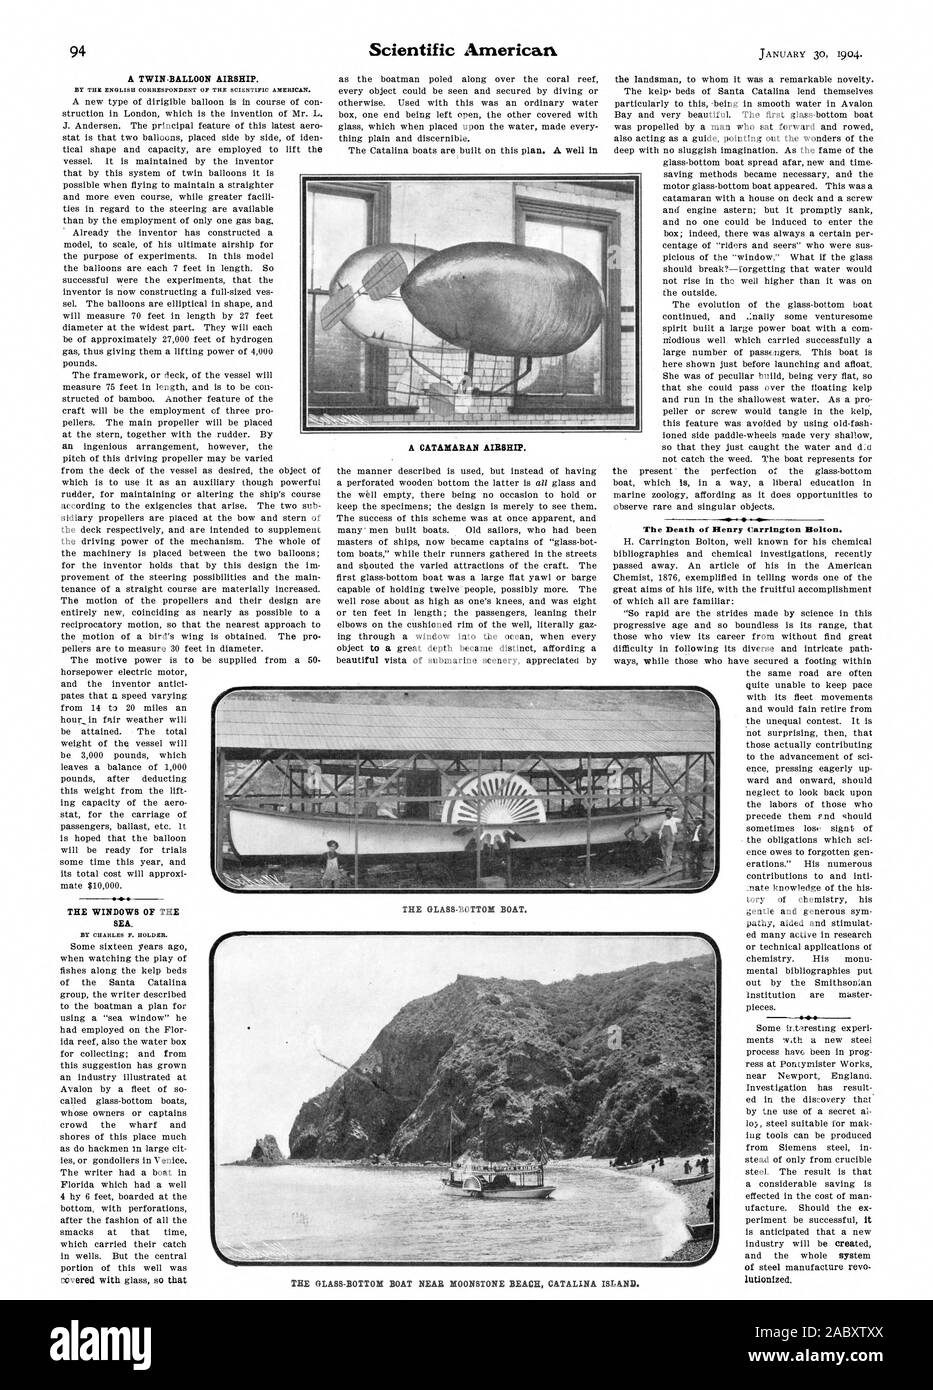 Ein TWIN-BALLON LUFTSCHIFF. Die FENSTER AUF DAS MEER. Der Tod von Henry Carrington Bolton. Ein Katamaran Luftschiff. Die GLASBODENBOOT. Die GLASBODENBOOT IN DER NÄHE VON MOONSTONE BEACH CATALINA Island., Scientific American, 1904-01-30 Stockfoto